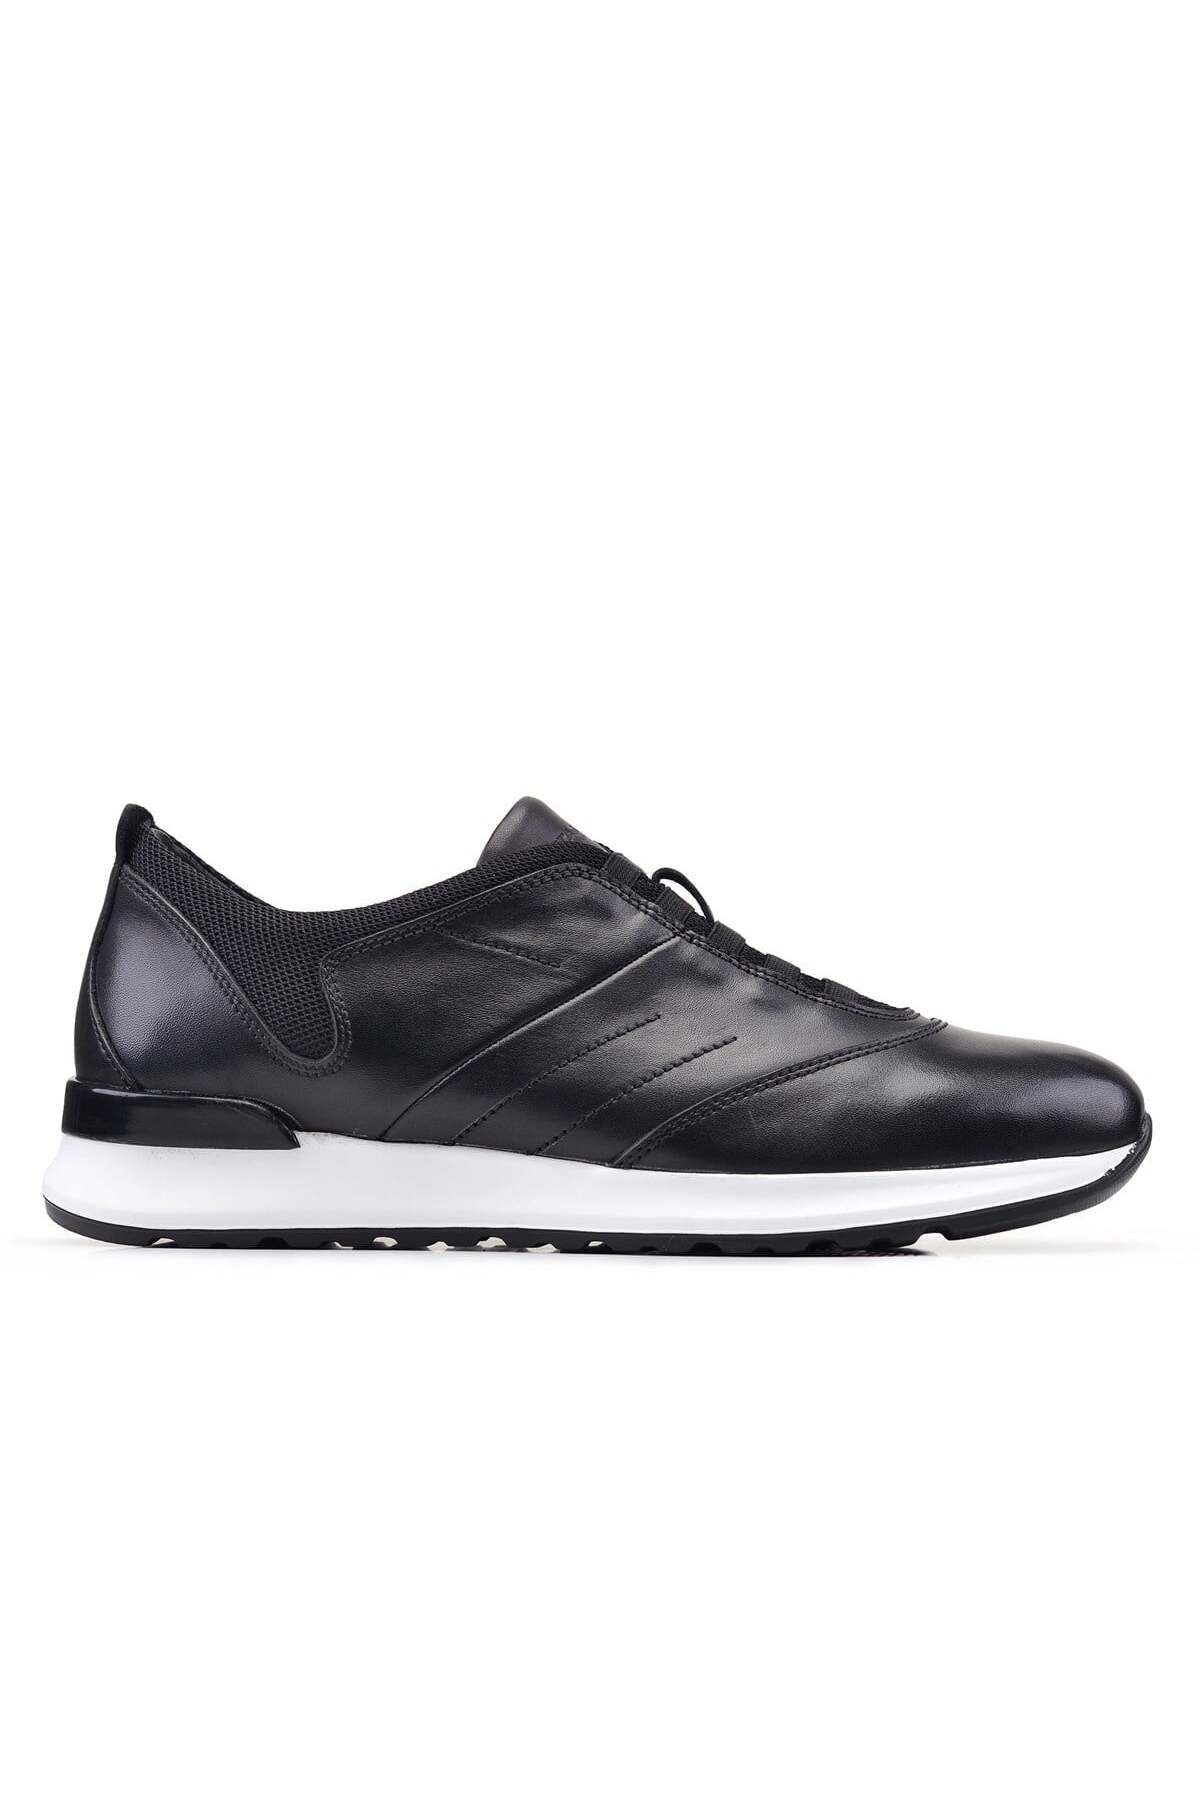 Nevzat Onay Siyah Sneaker Erkek Ayakkabı -92351-